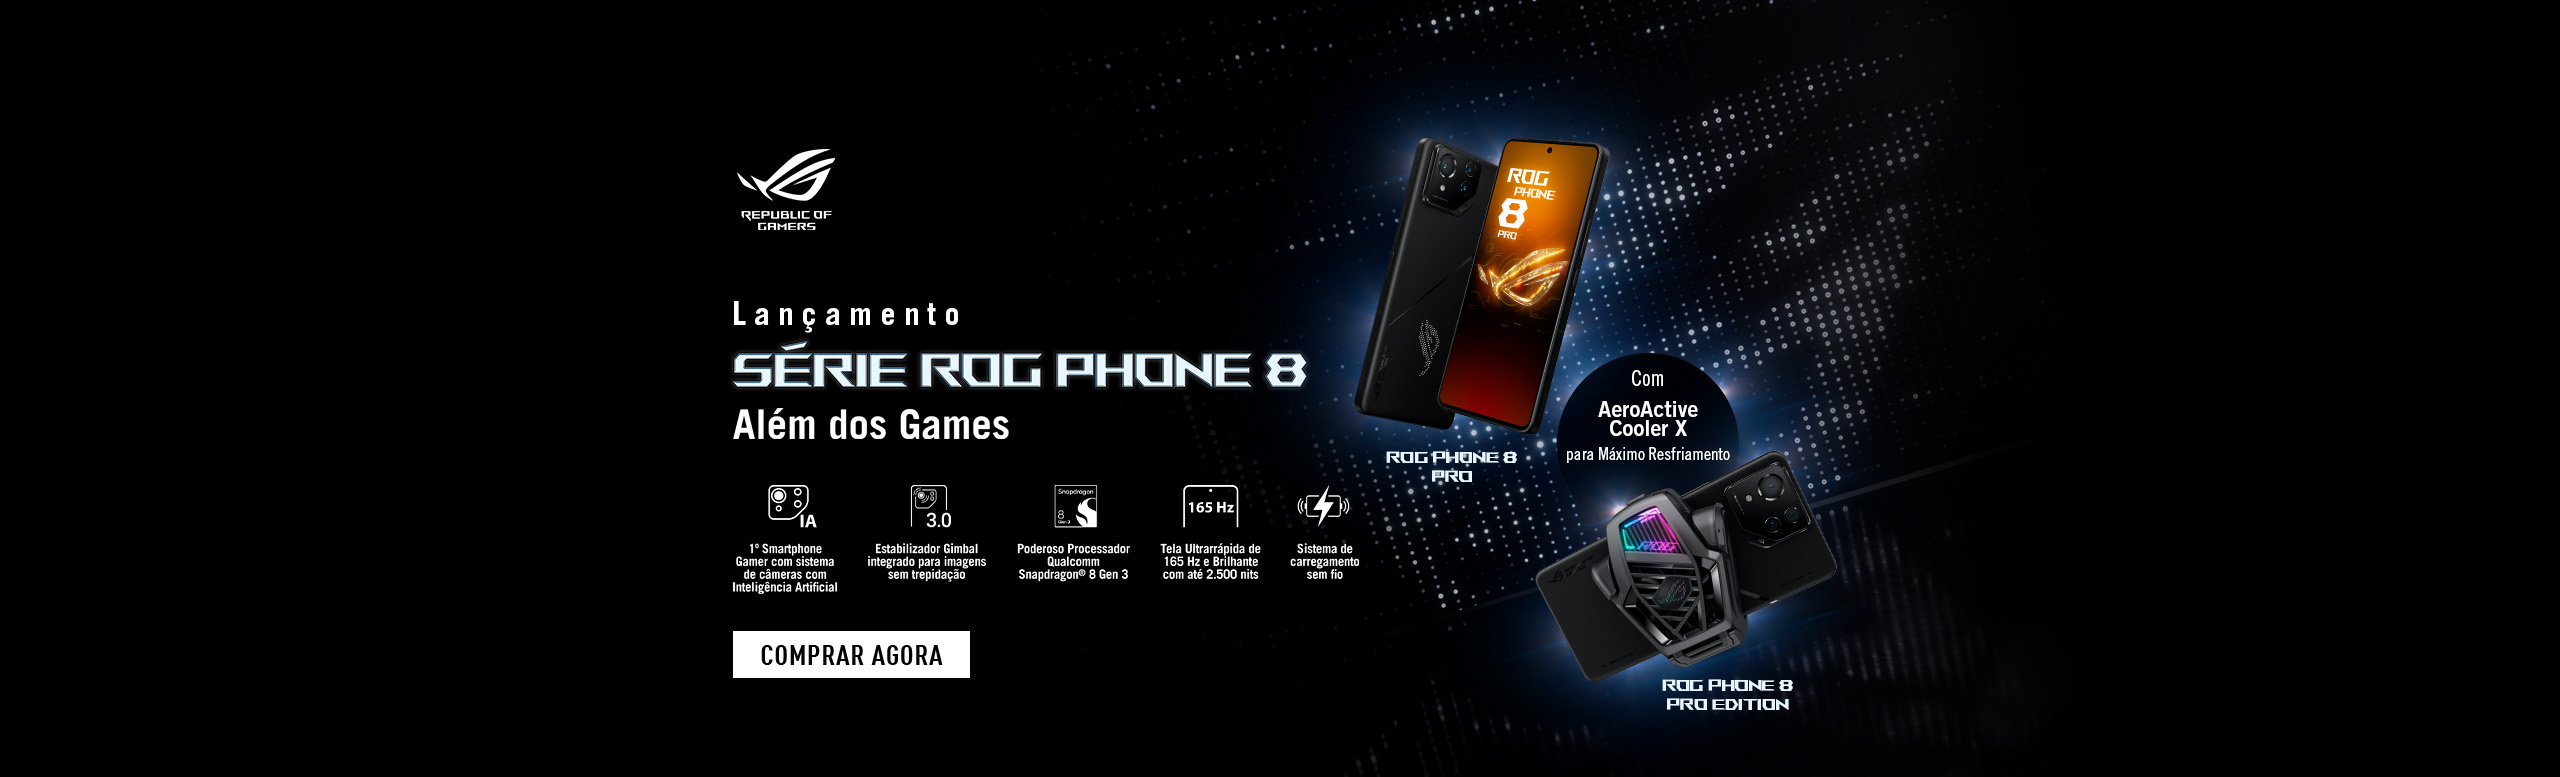 Lançamento ROG Phone 8